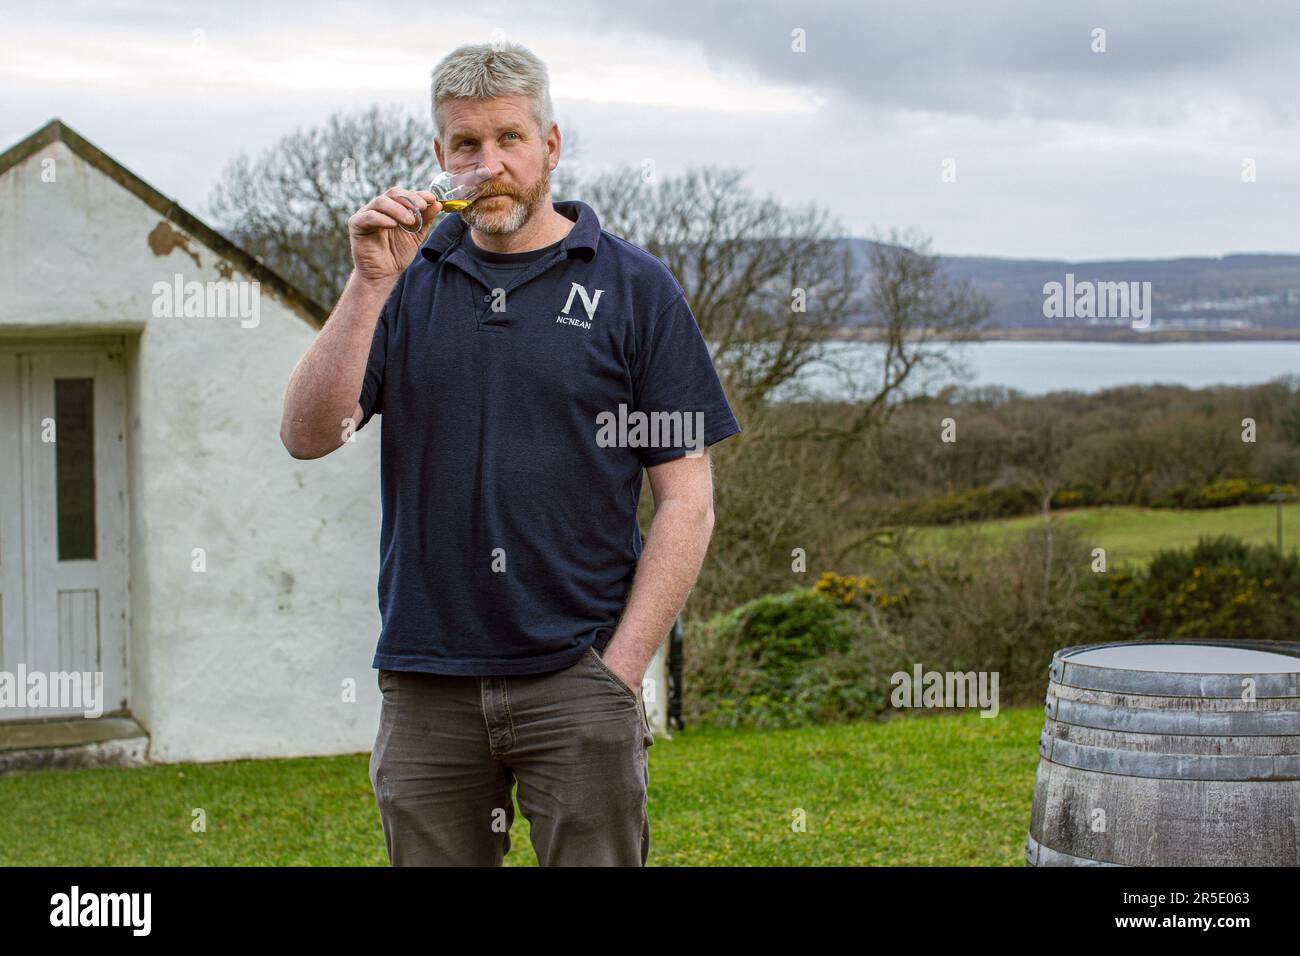 Graham Wood Directeur de la distillerie NC’nean à Drimnin Estate à Movern, Écosse, Royaume-Uni. Banque D'Images